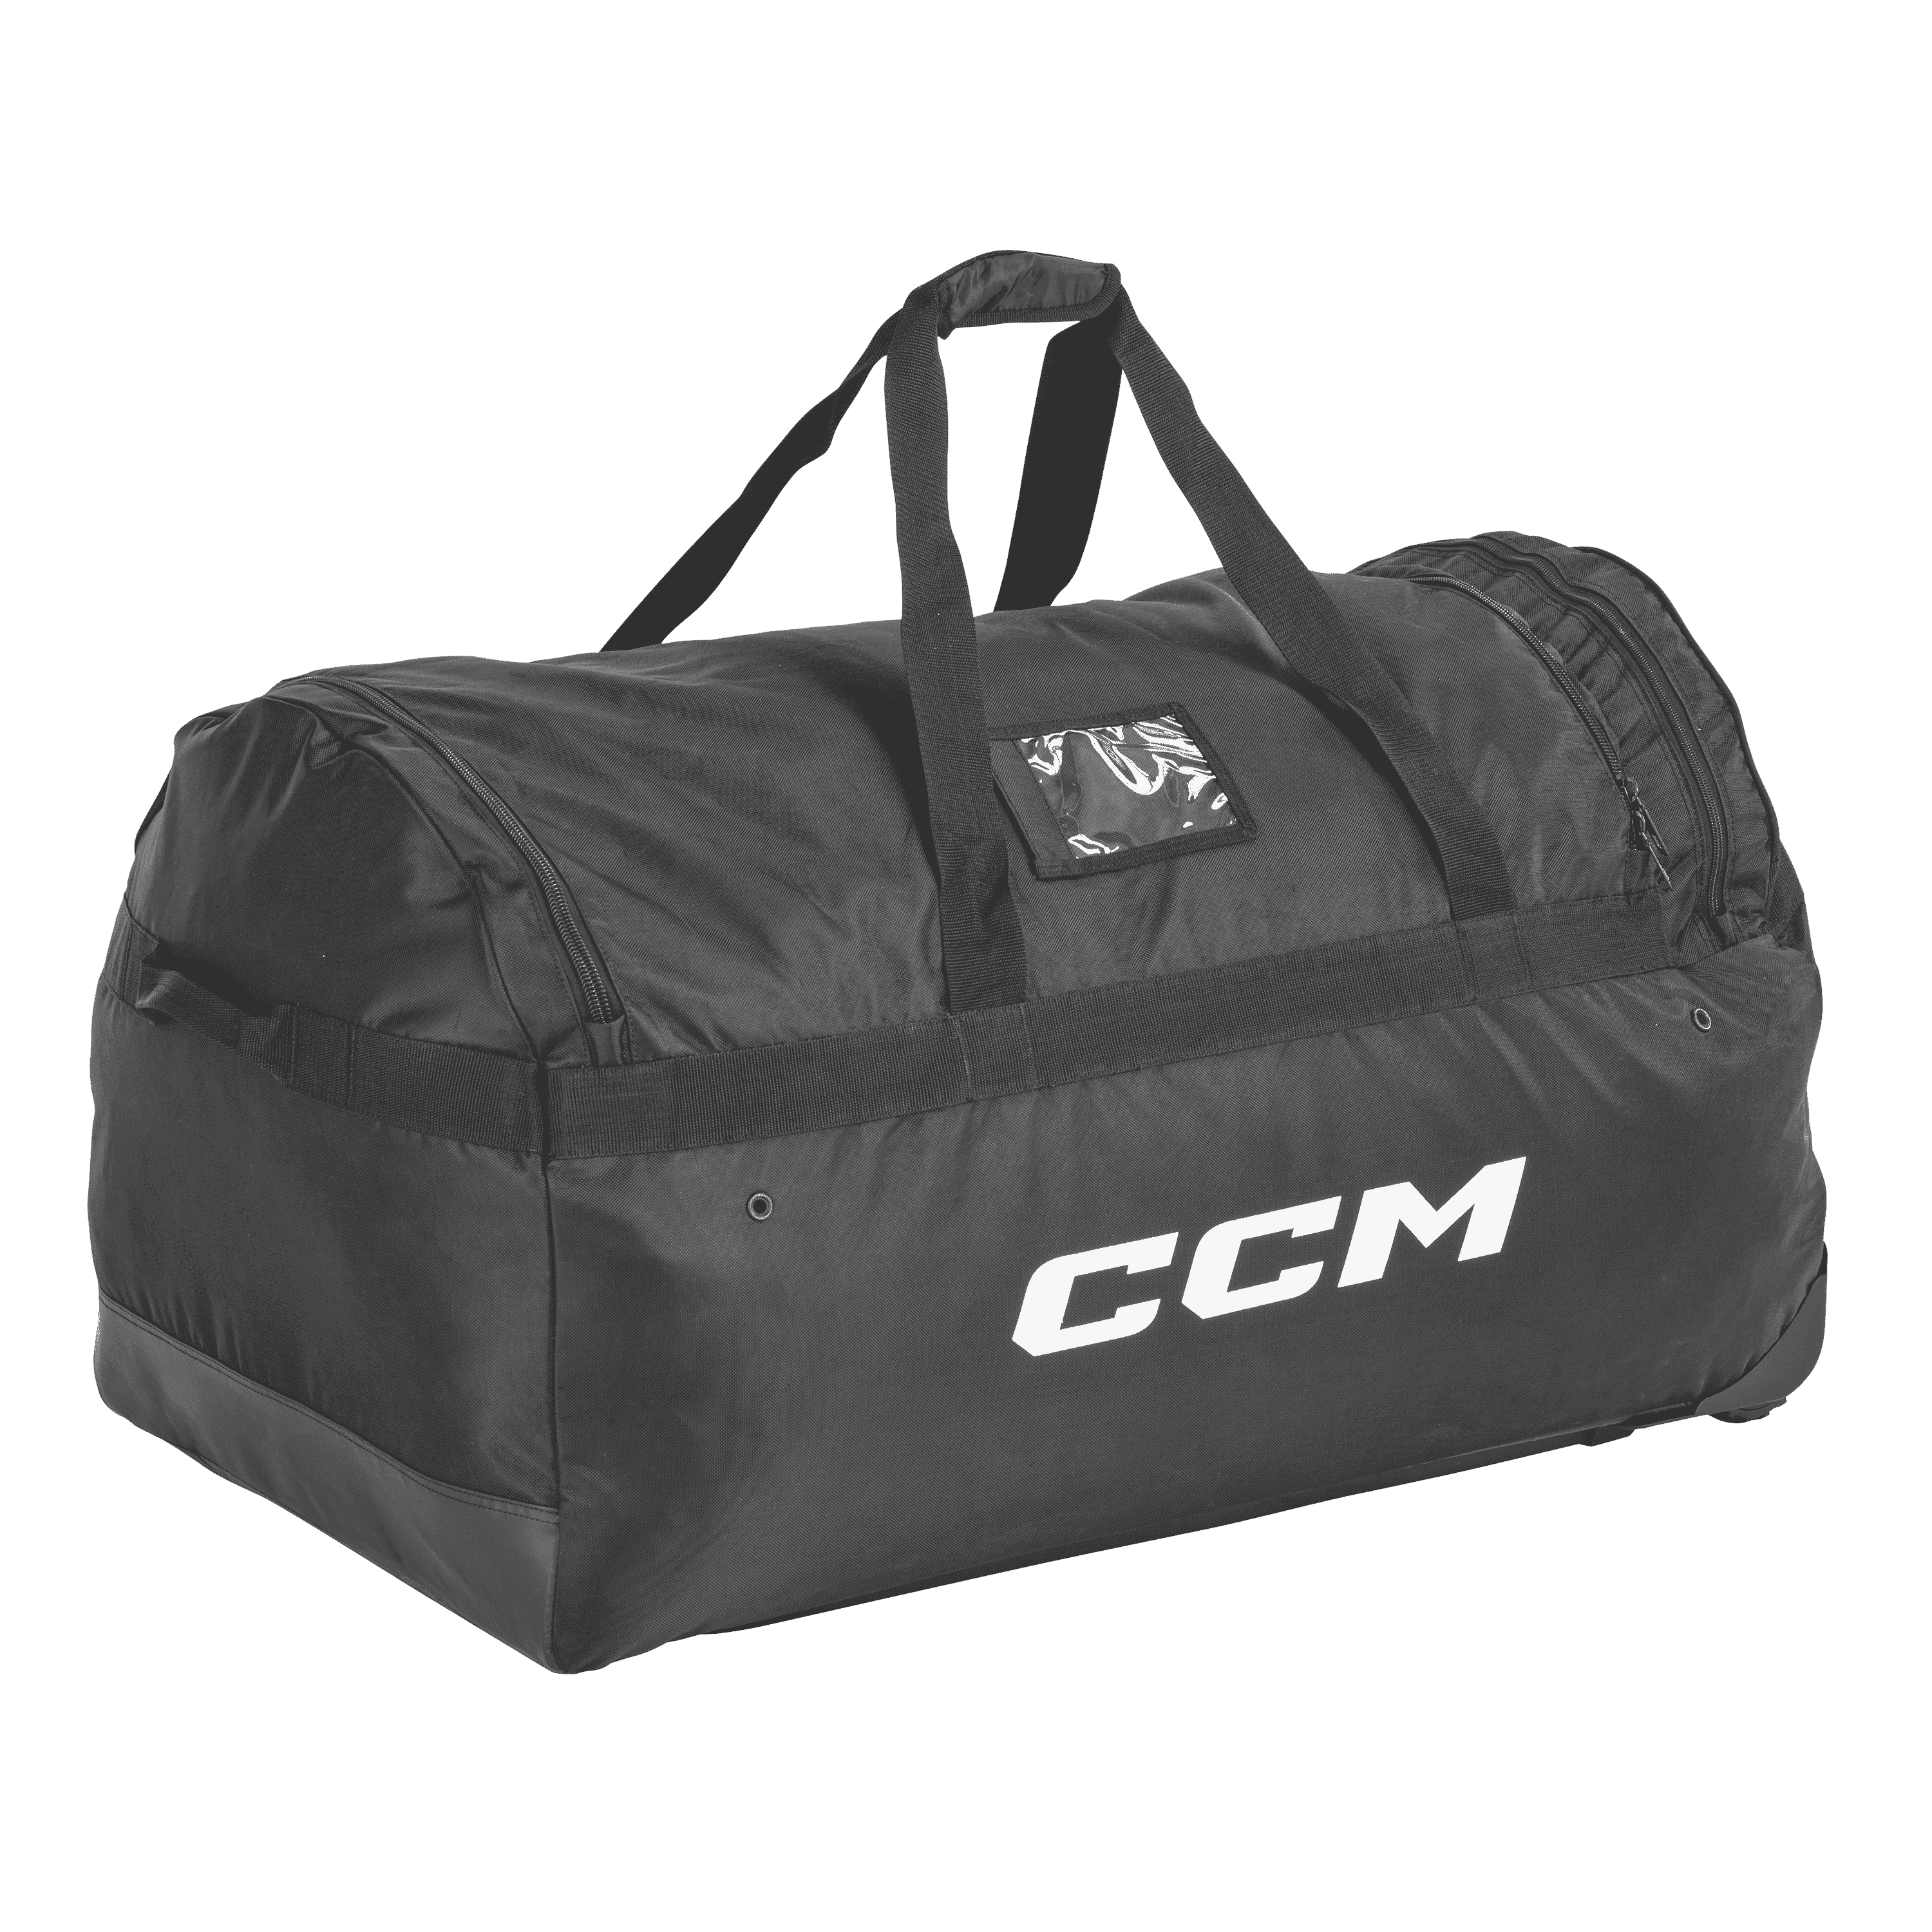 Tasche CCM 470 Player Premium Wheeled Bag 32"L x 18"H x 18" W